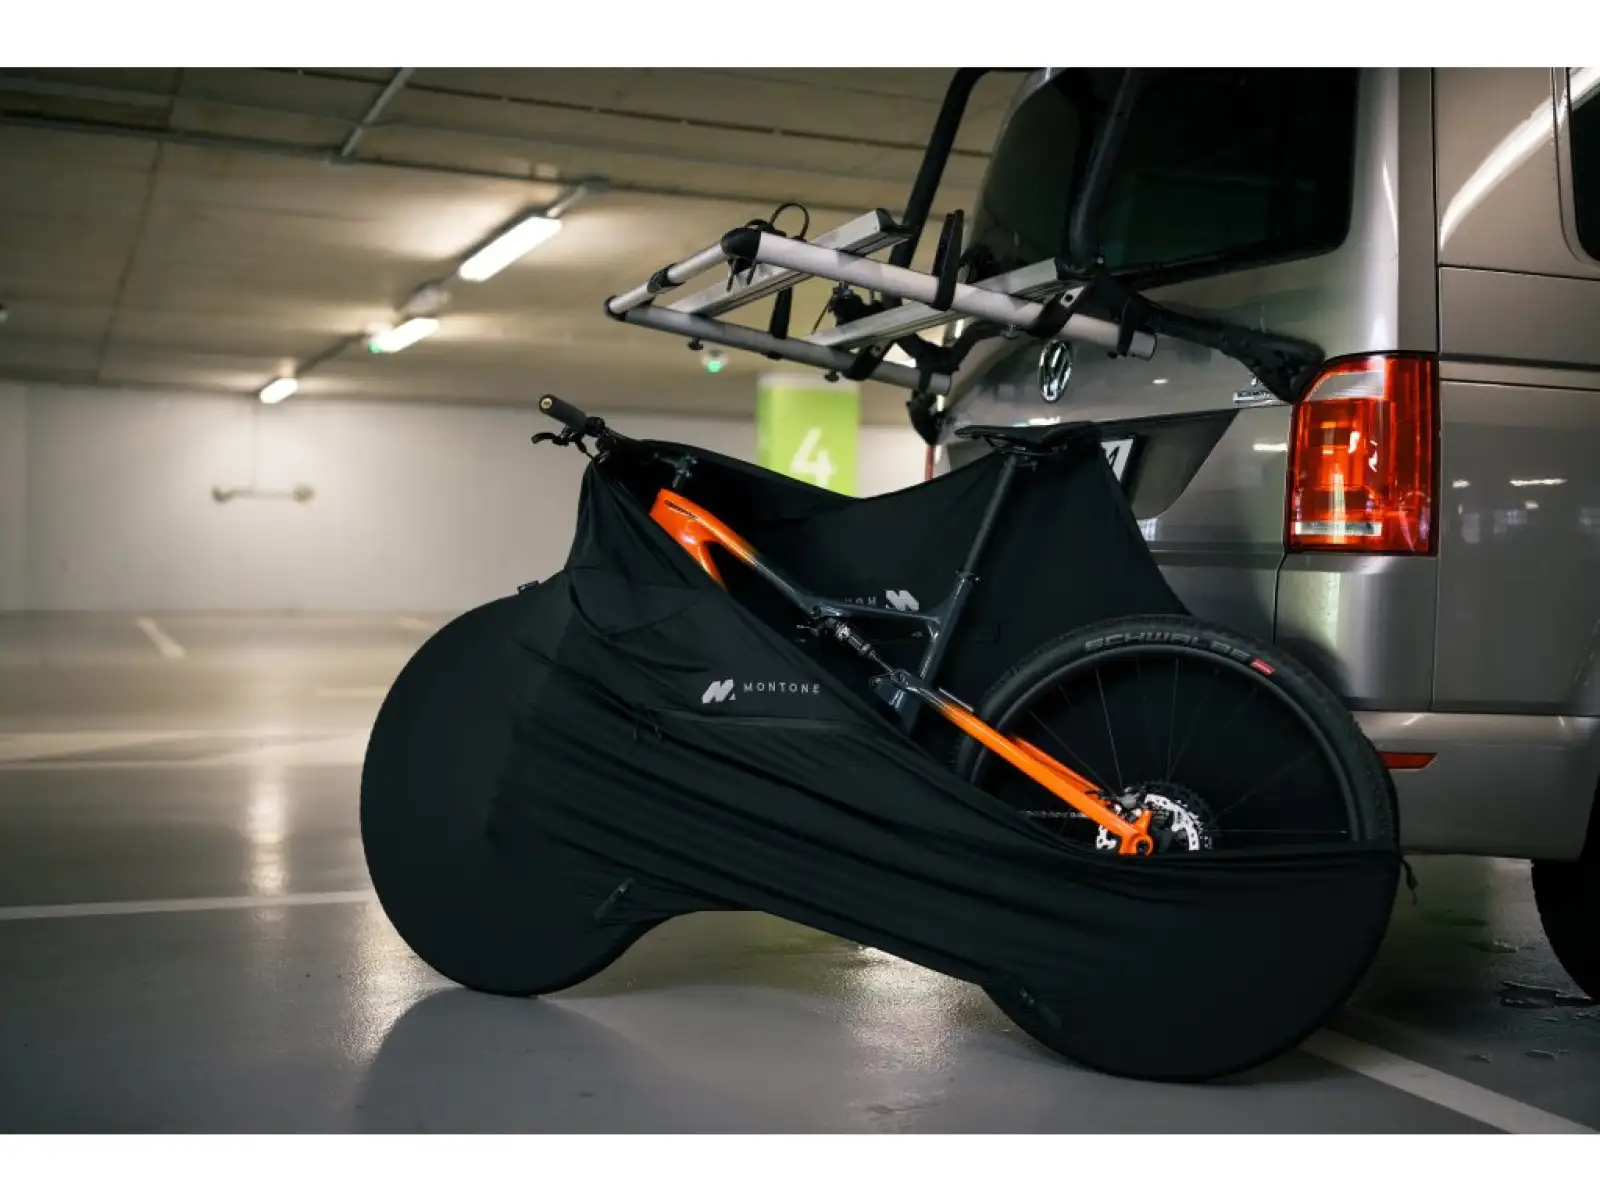 Montone bike mRoof ochrana kola pro převoz na střešním nosiči